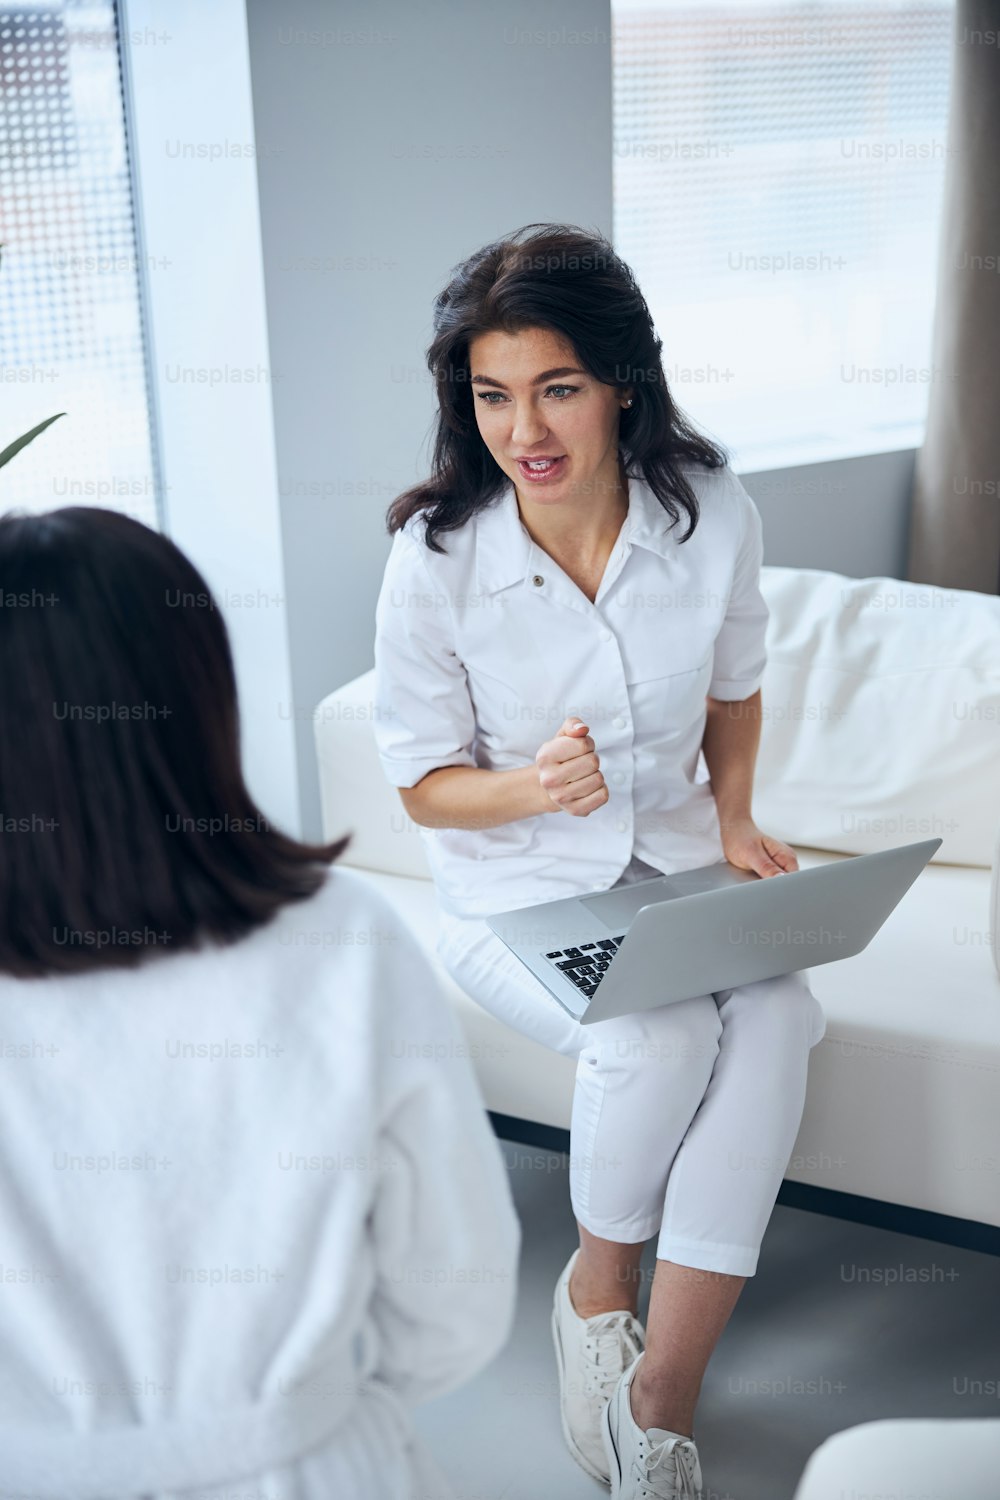 Profissional de saúde focado com um laptop nos joelhos entrevistando uma mulher durante a consulta